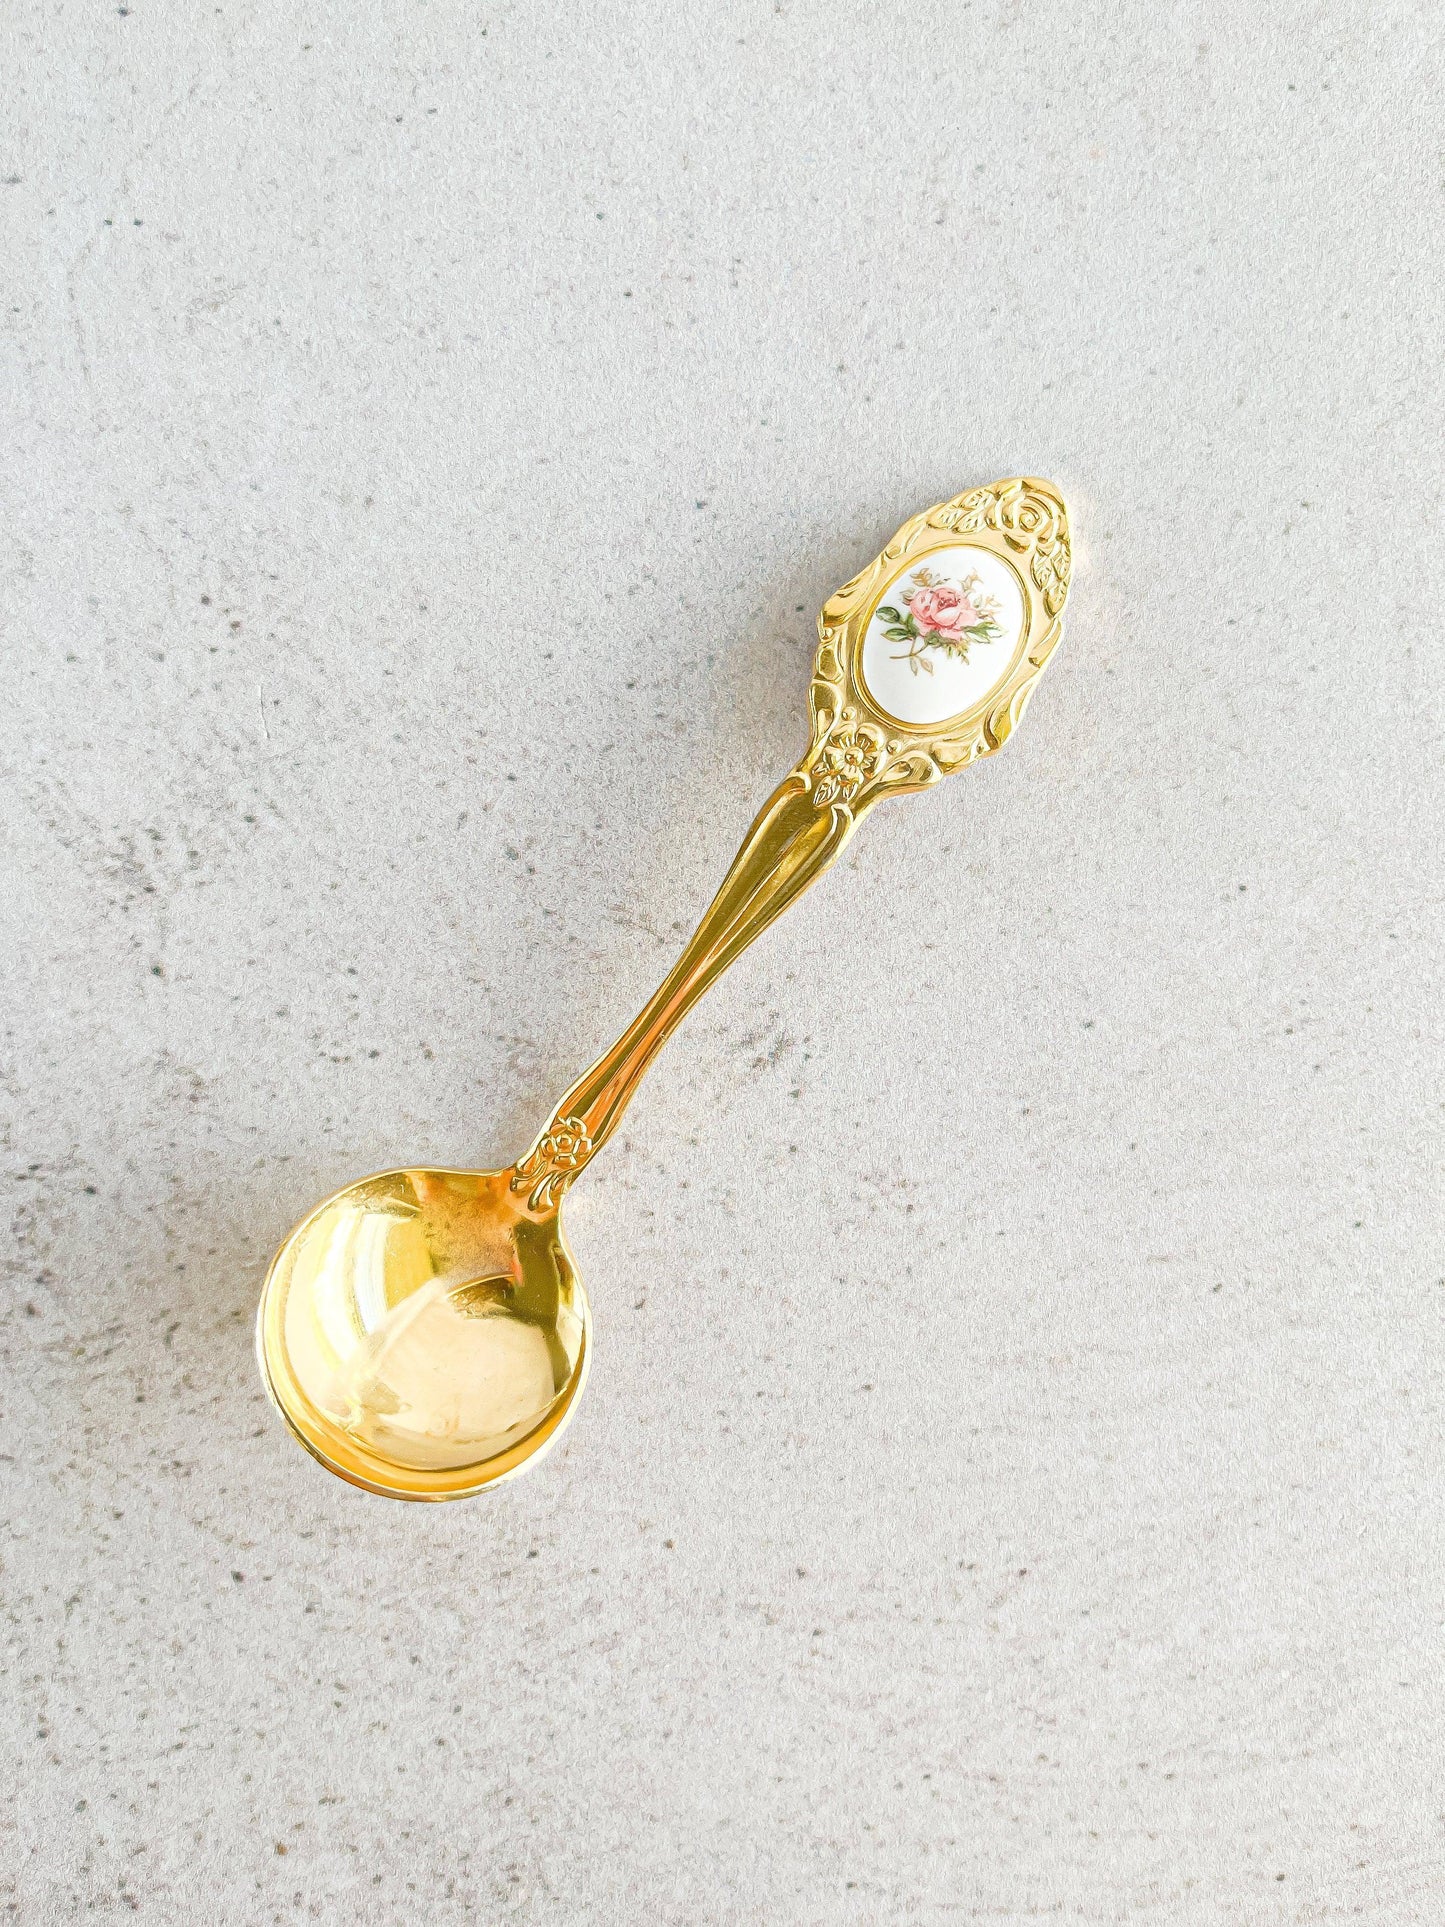 Eetrite Sugar Spoons - Floral Medallion Designs - SOSC Home